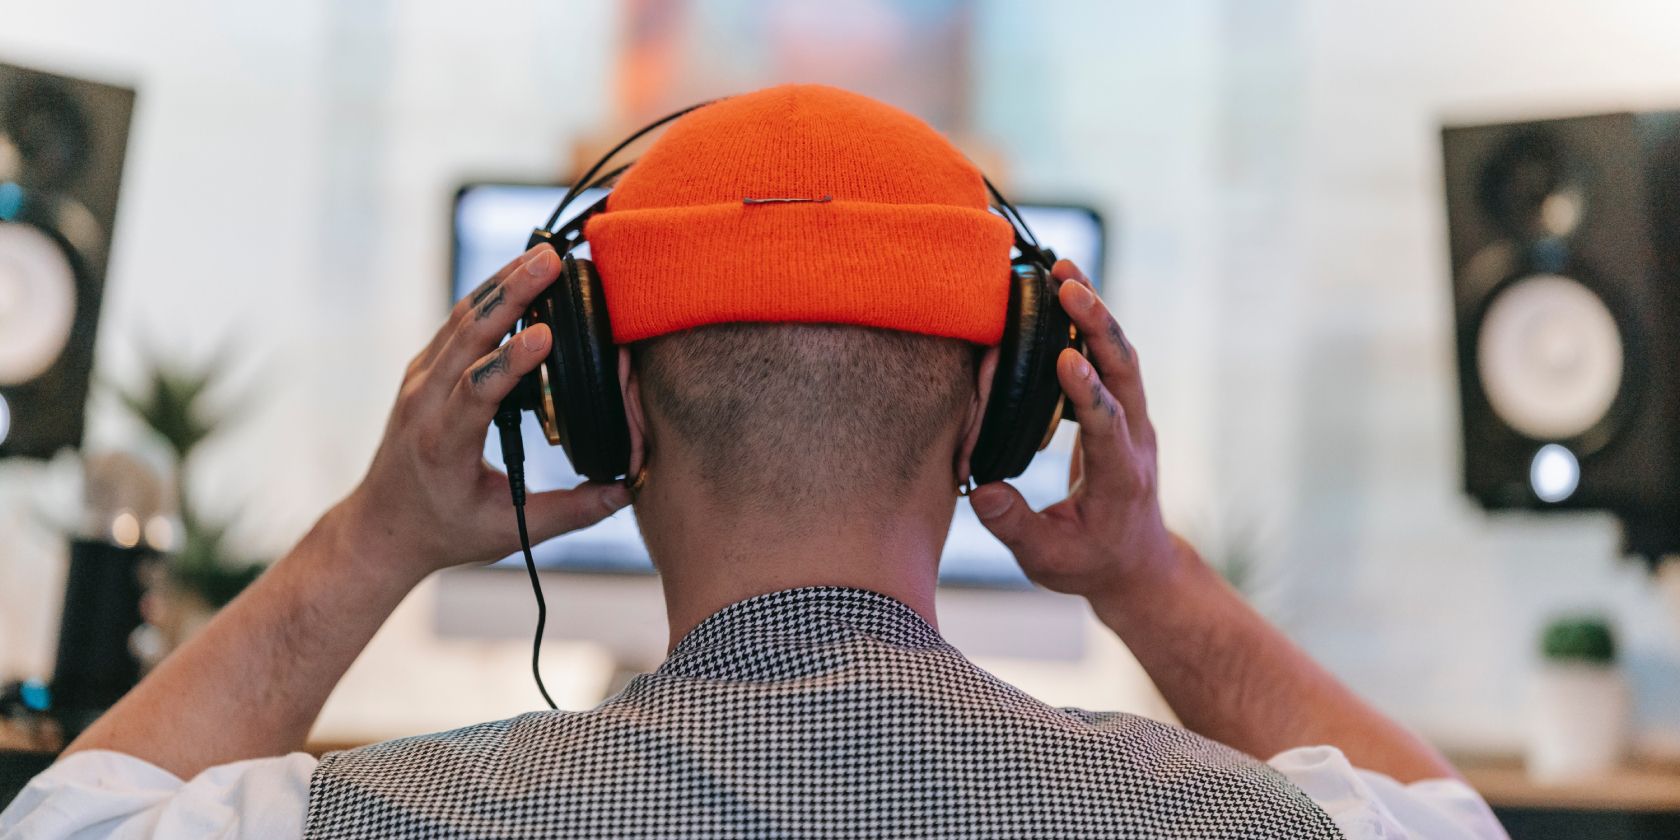 Người đeo tai nghe trước máy tính